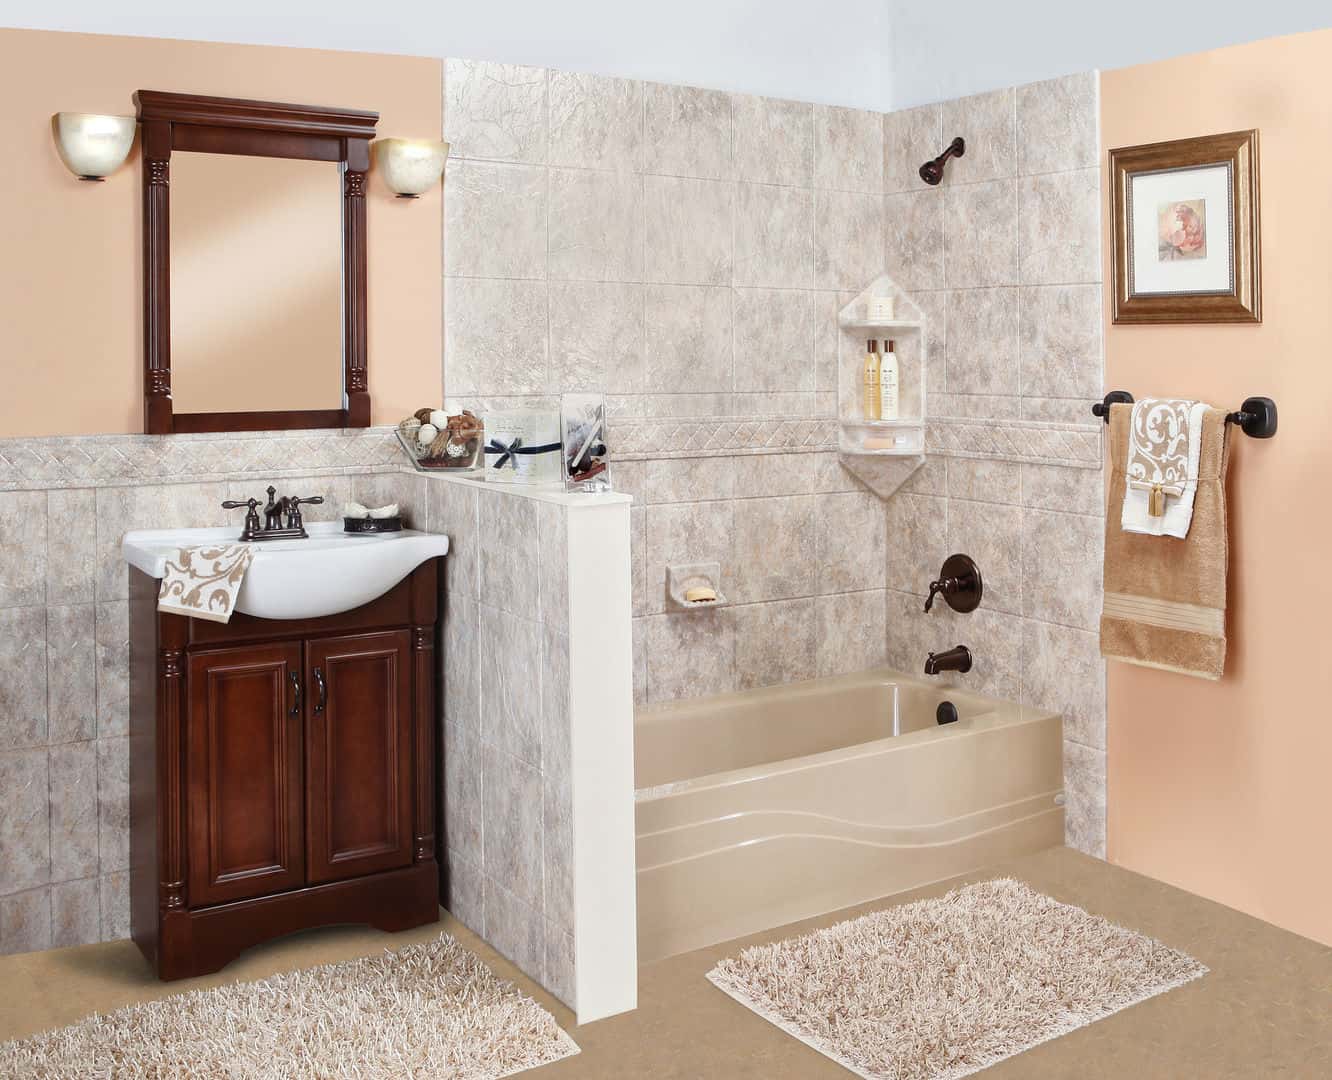 Woodbridge Shower & Bath | One Day Bathroom Remodel in Dallas, TX